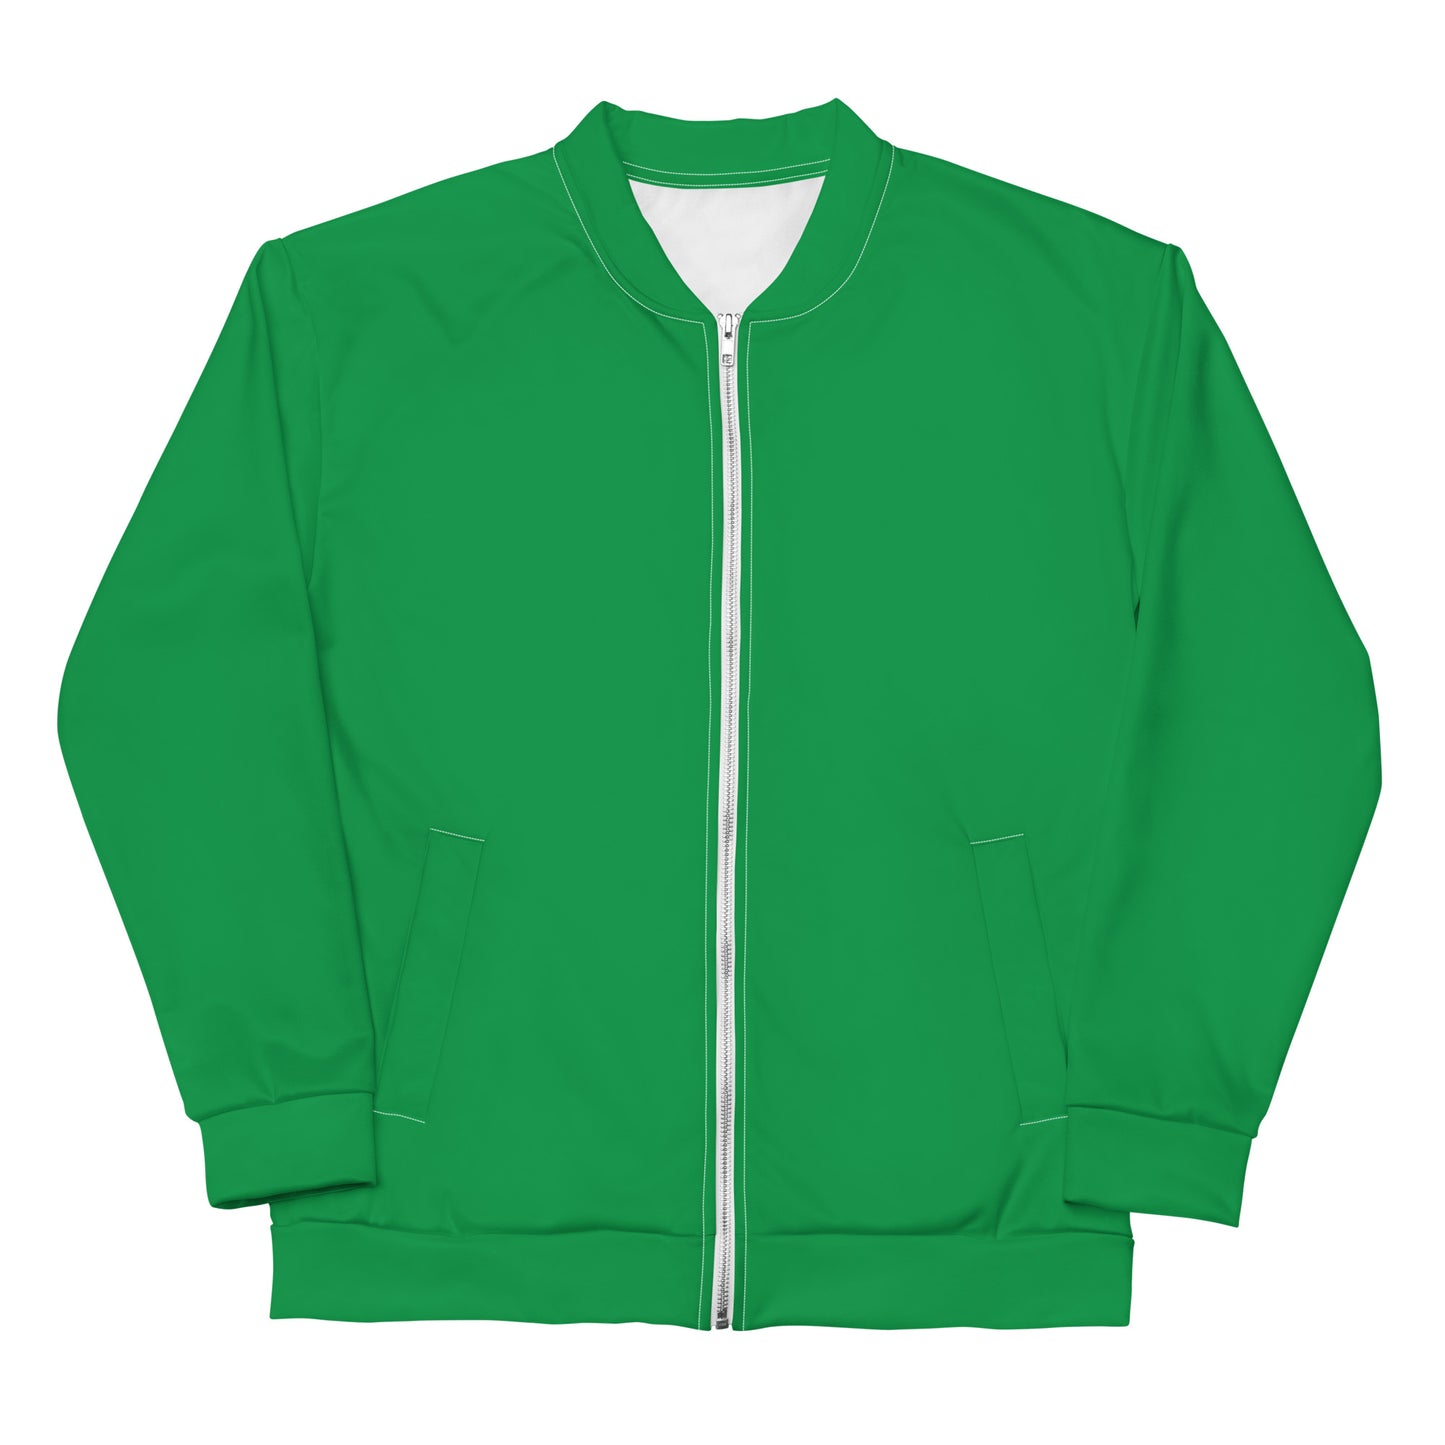 Basic Green - Sustainably Made Jacket